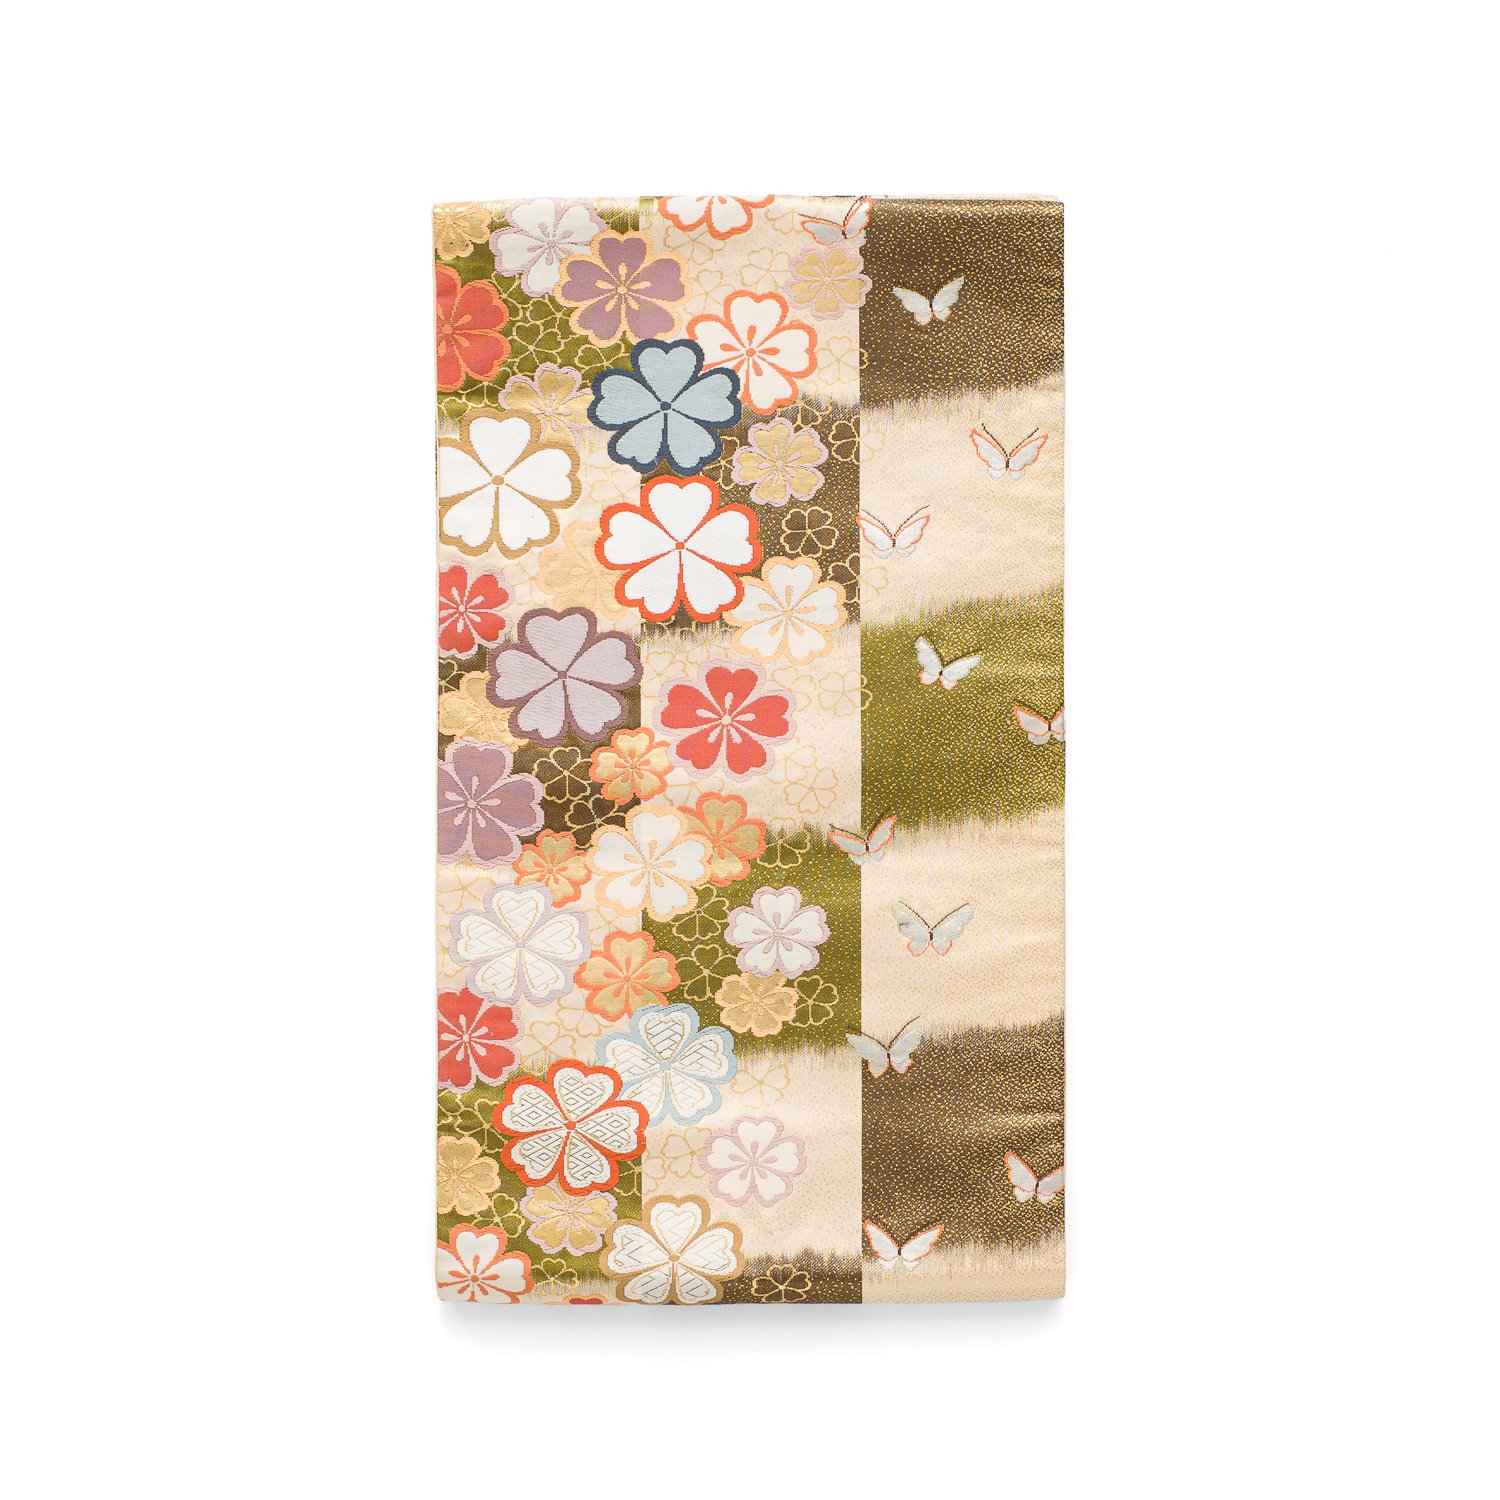 「袋帯●市松に桜と蝶々」の商品画像